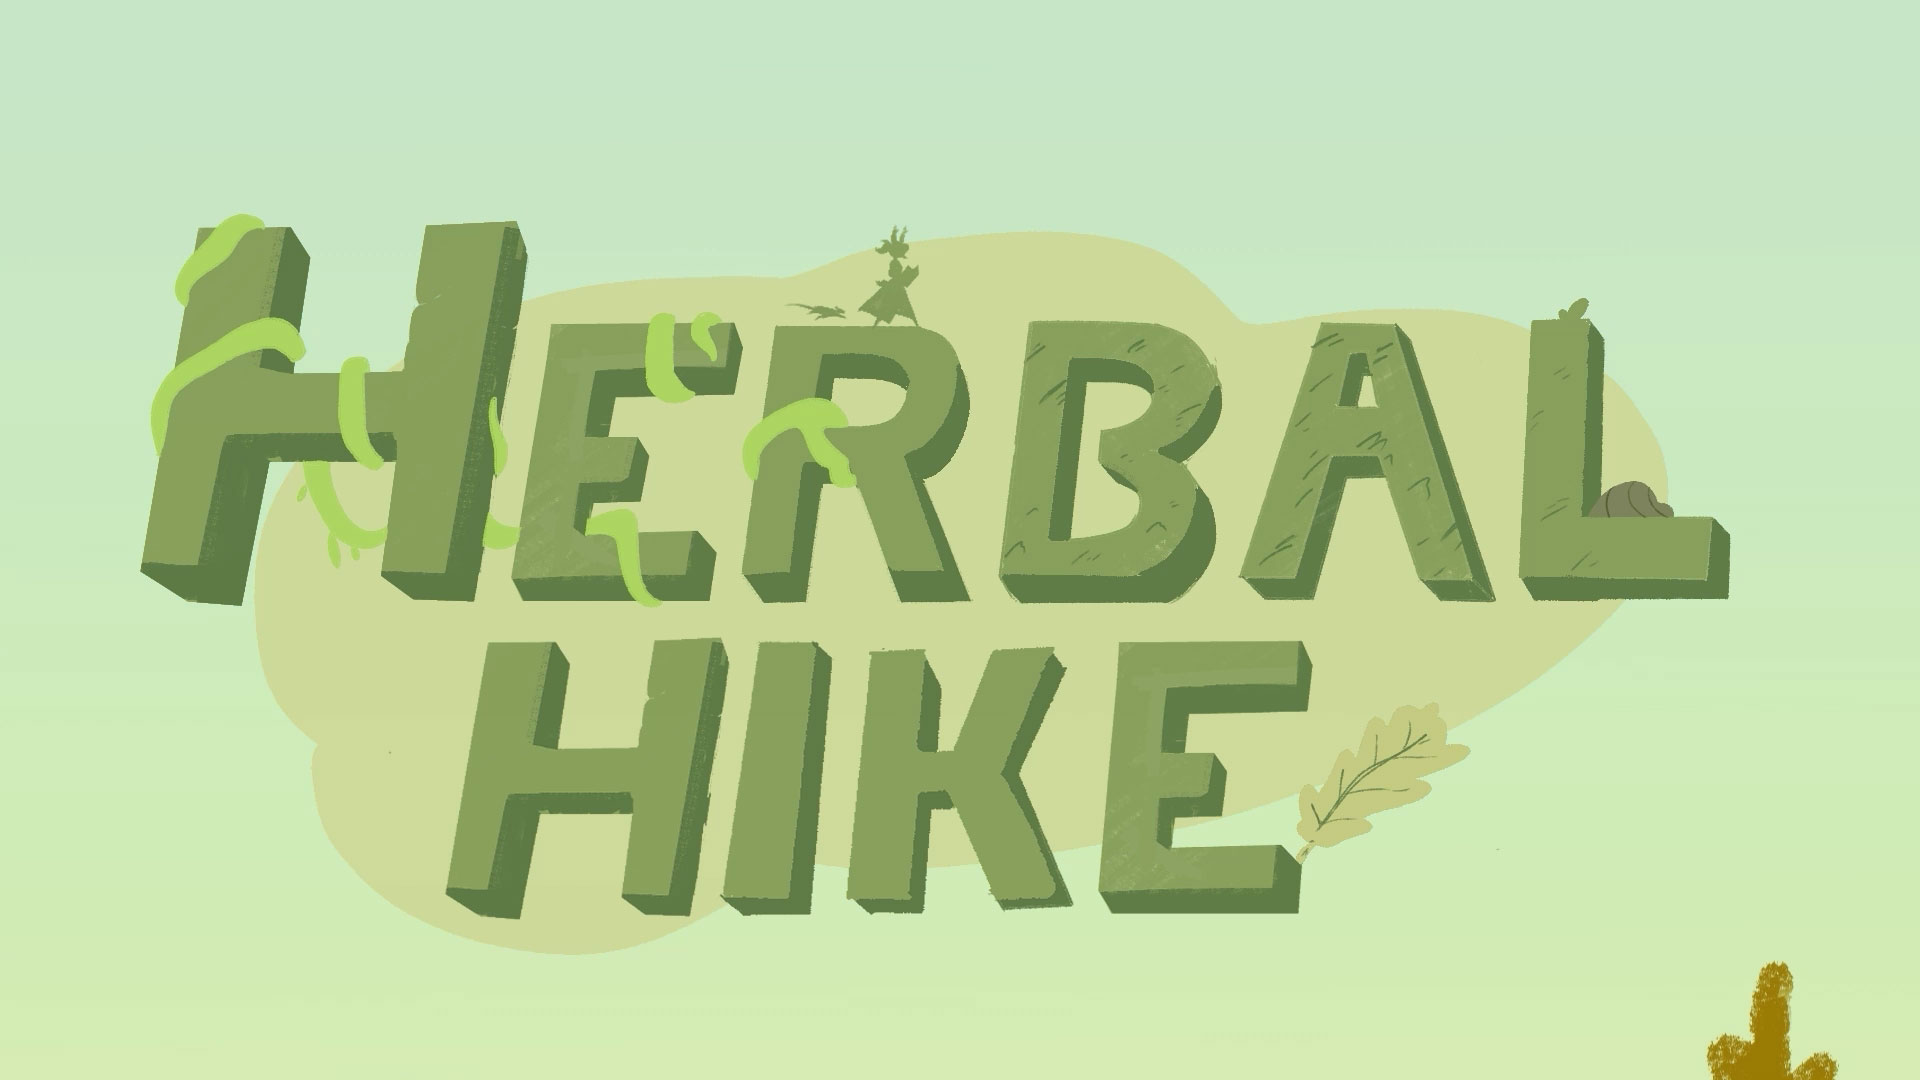 Herbal Hike